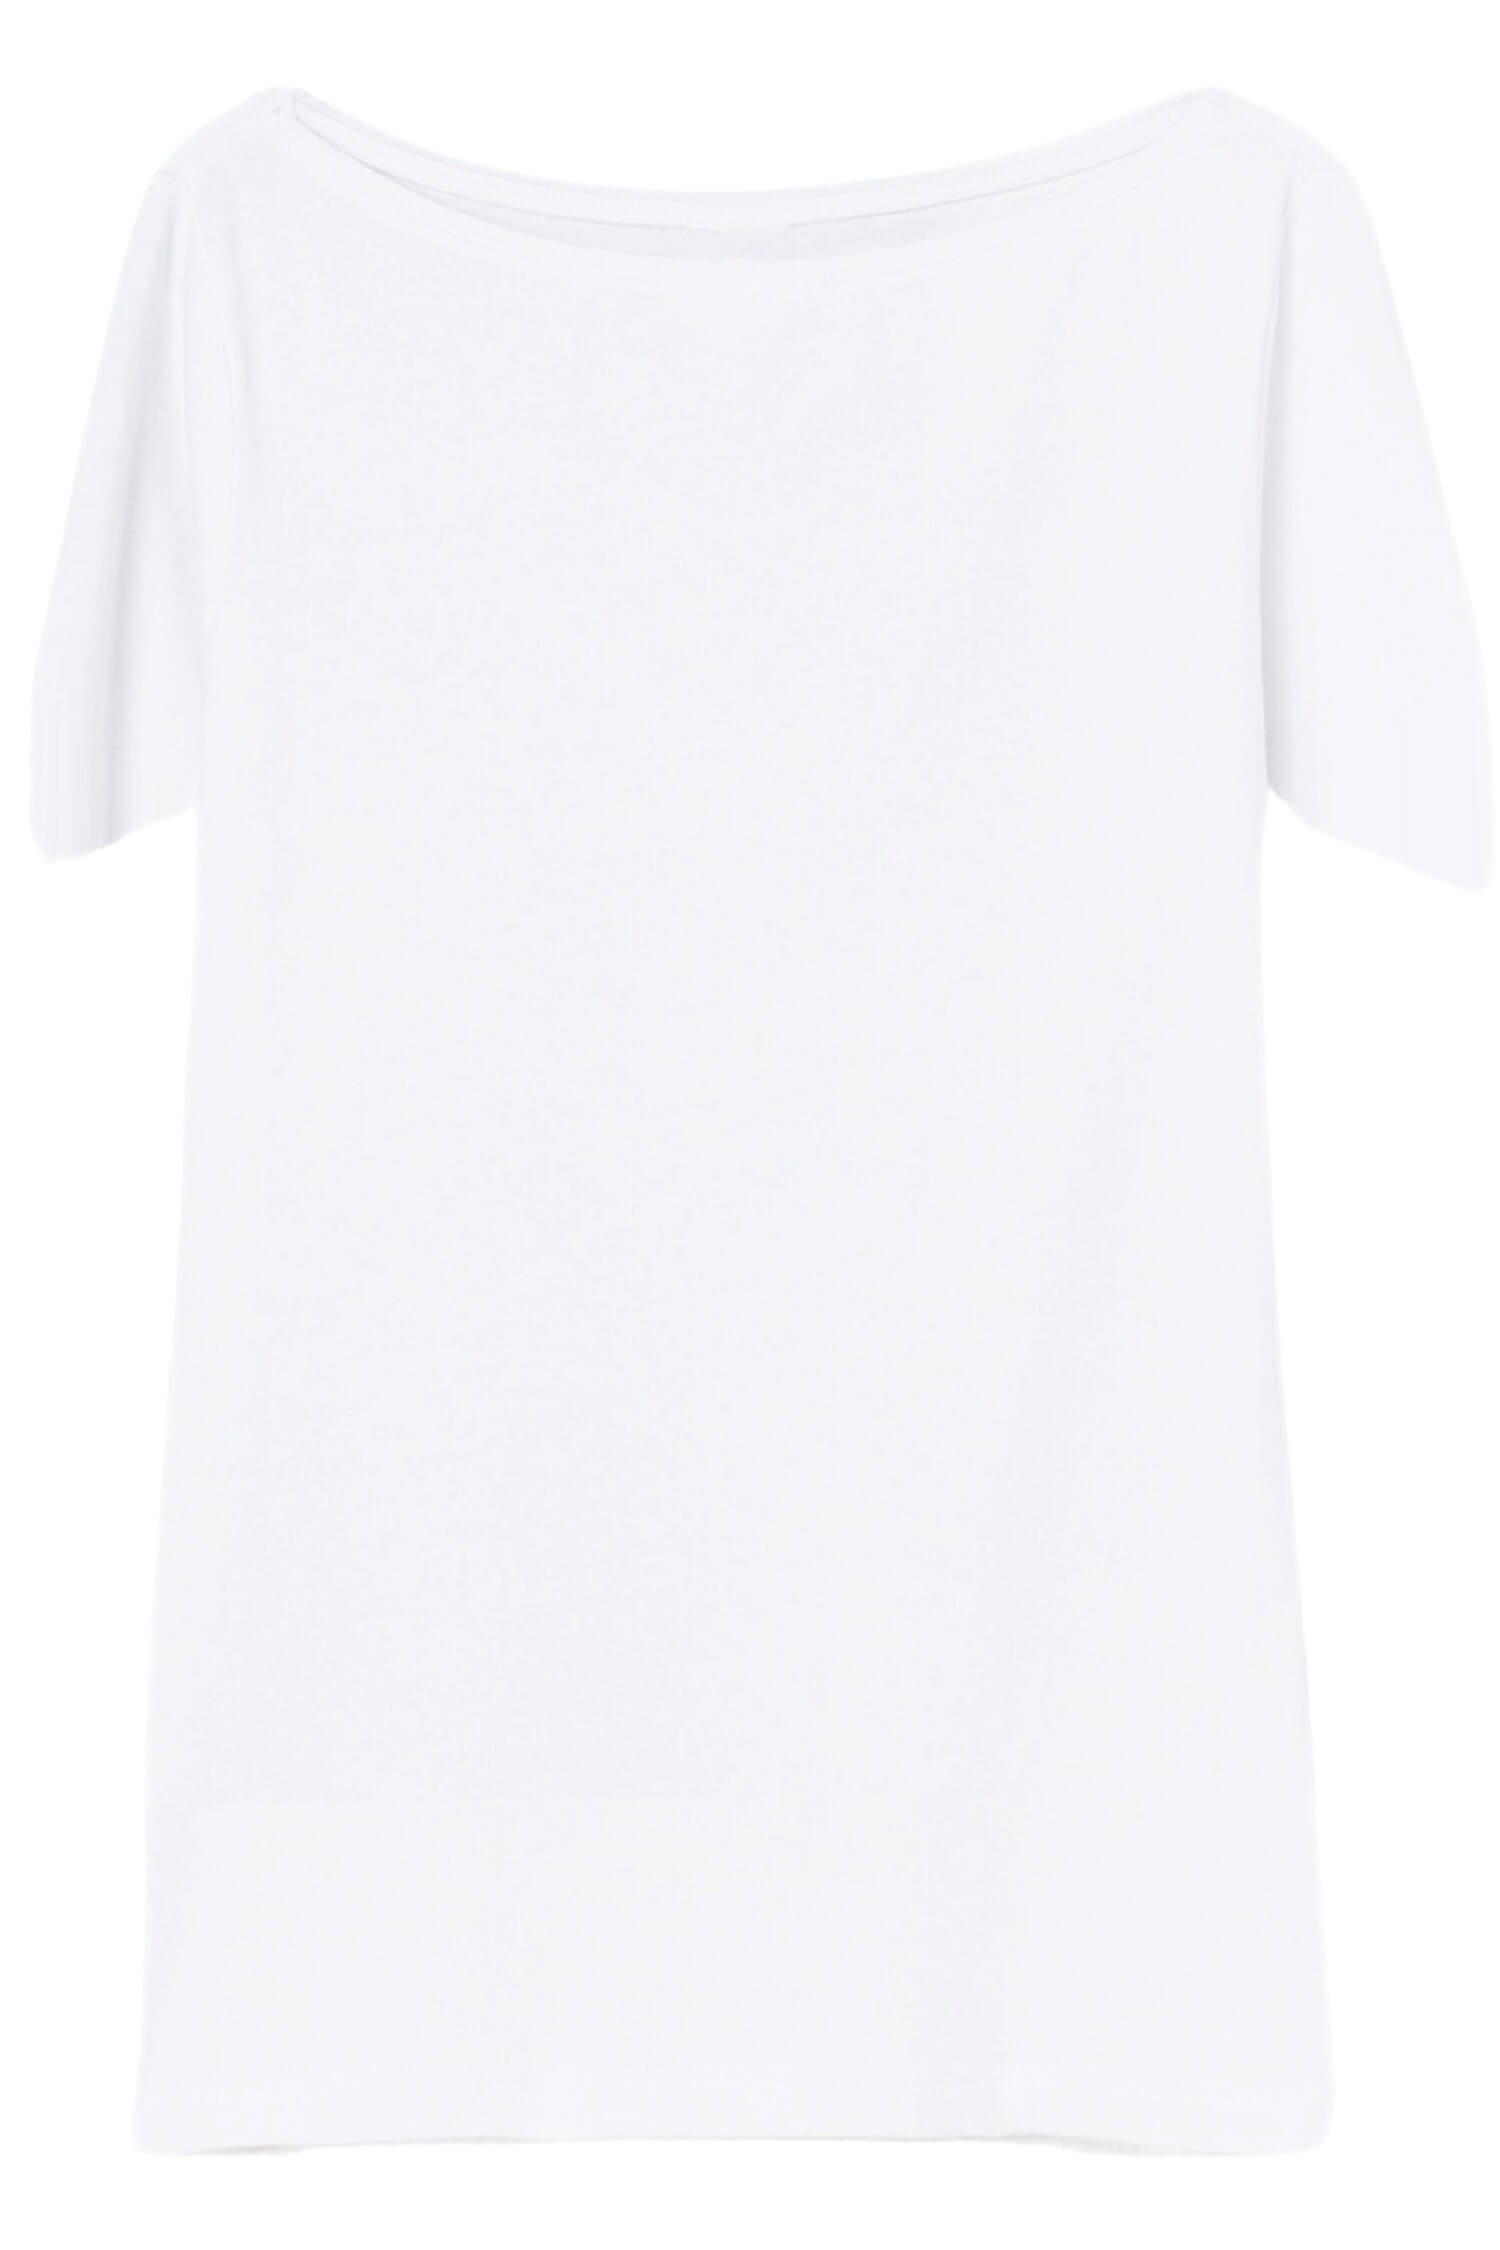 Danica dámské tričko s krátkým rukávem TSK-1005 bílá L